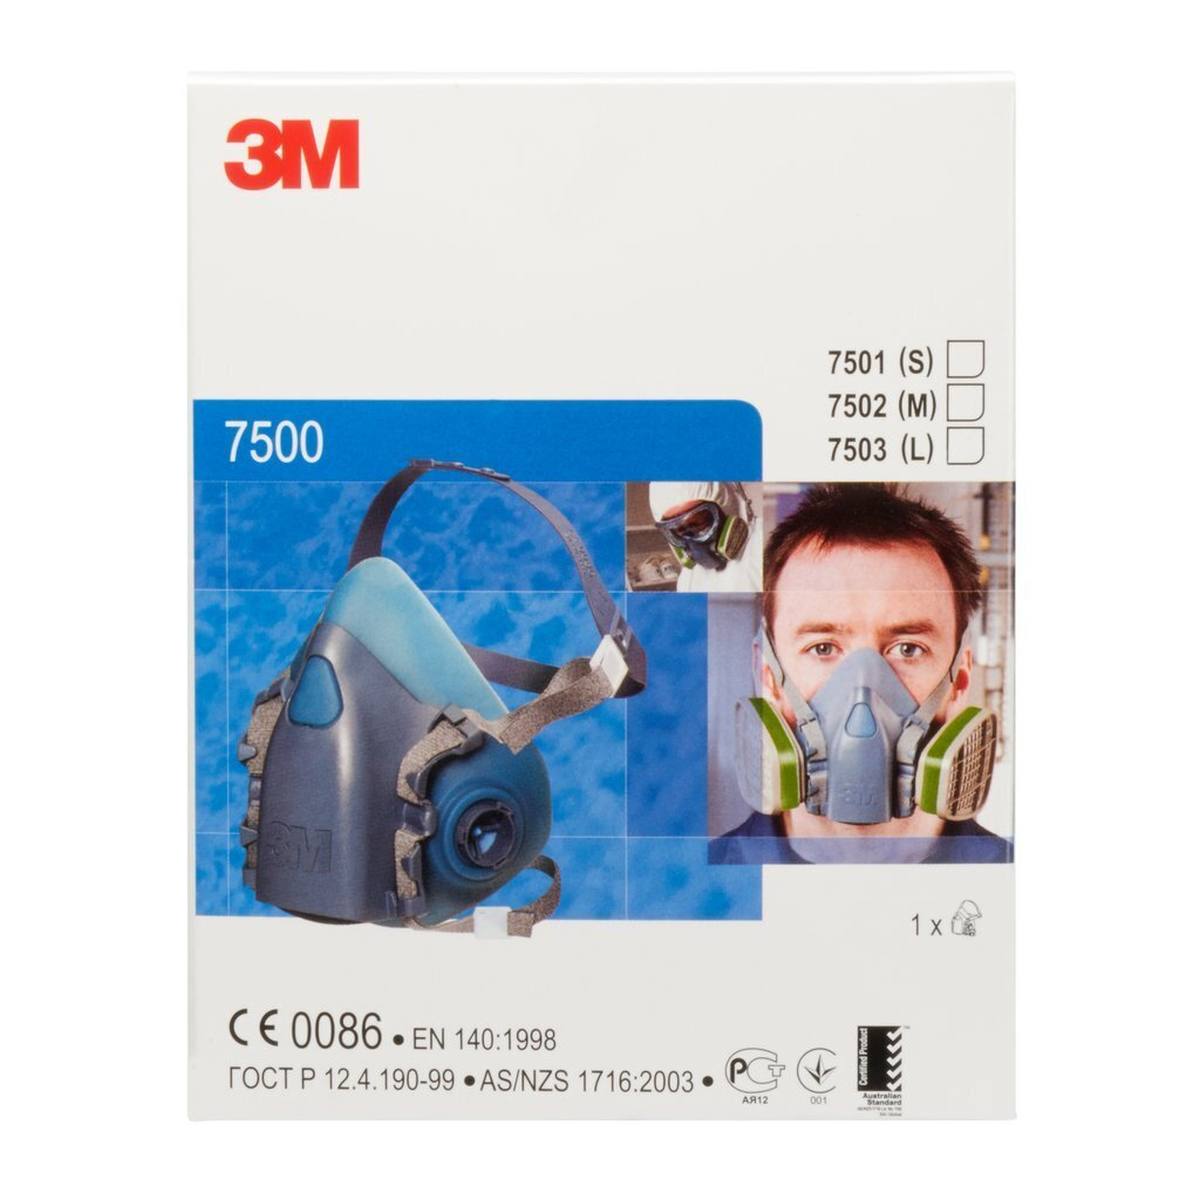 3M 7503L Mezza maschera in silicone/poliestere termoplastico taglia L